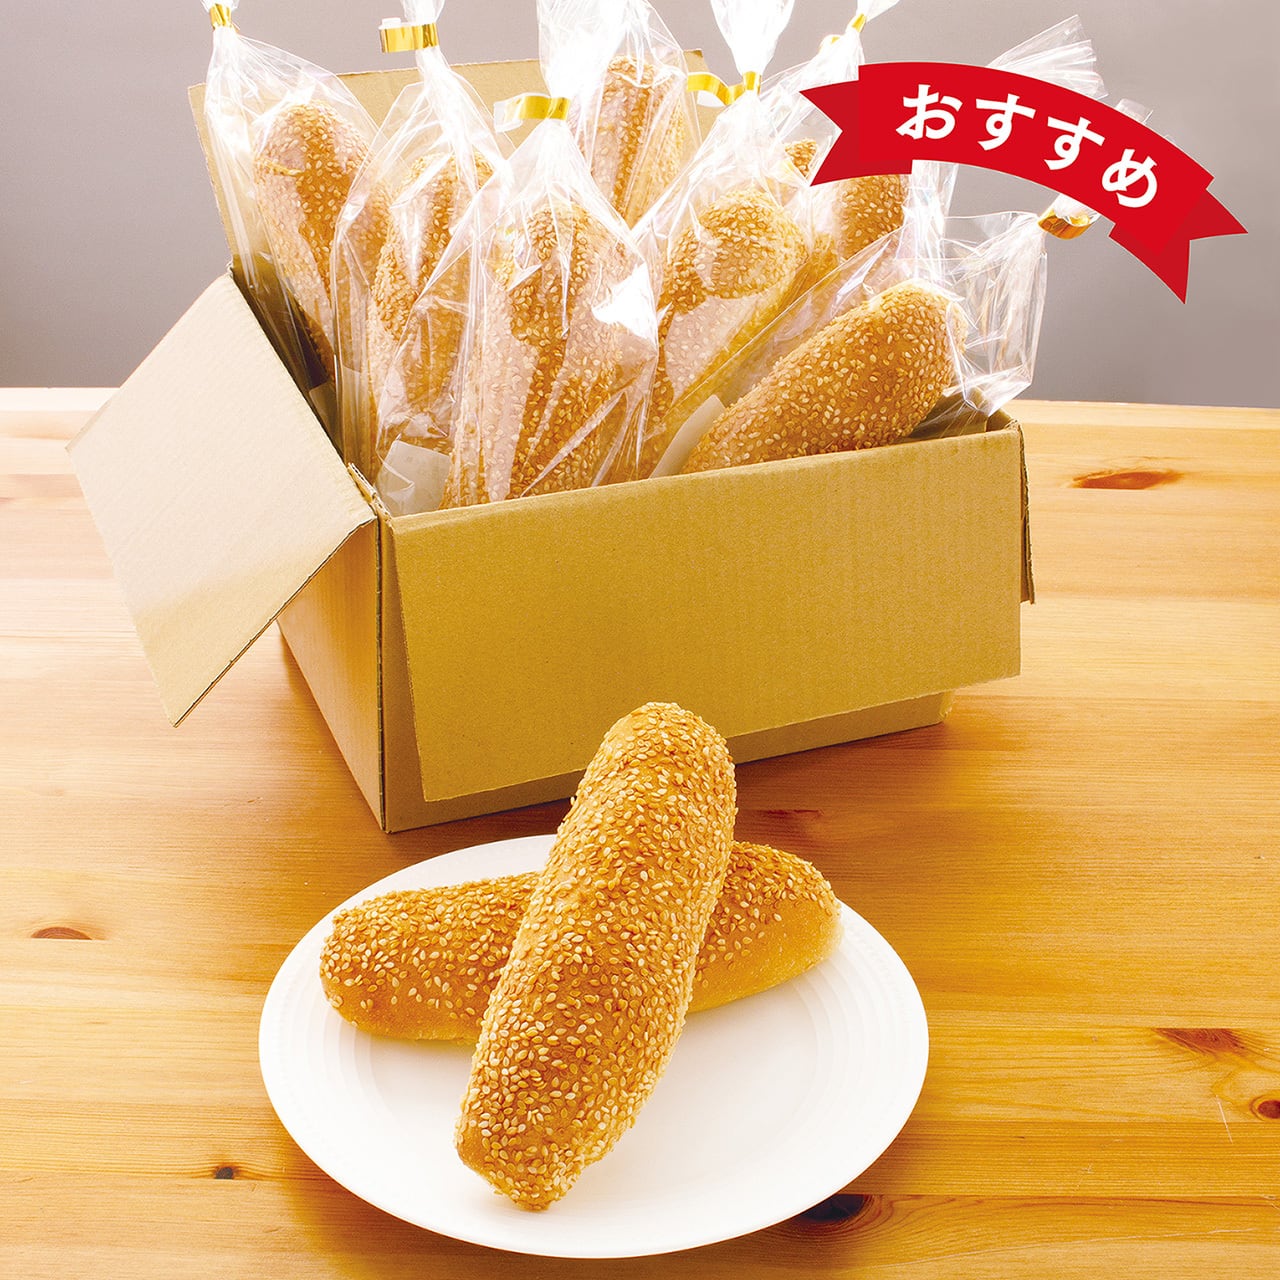 届いてからのお楽しみＢＯＸ【冷凍お取り寄せパン】 | a1bakery